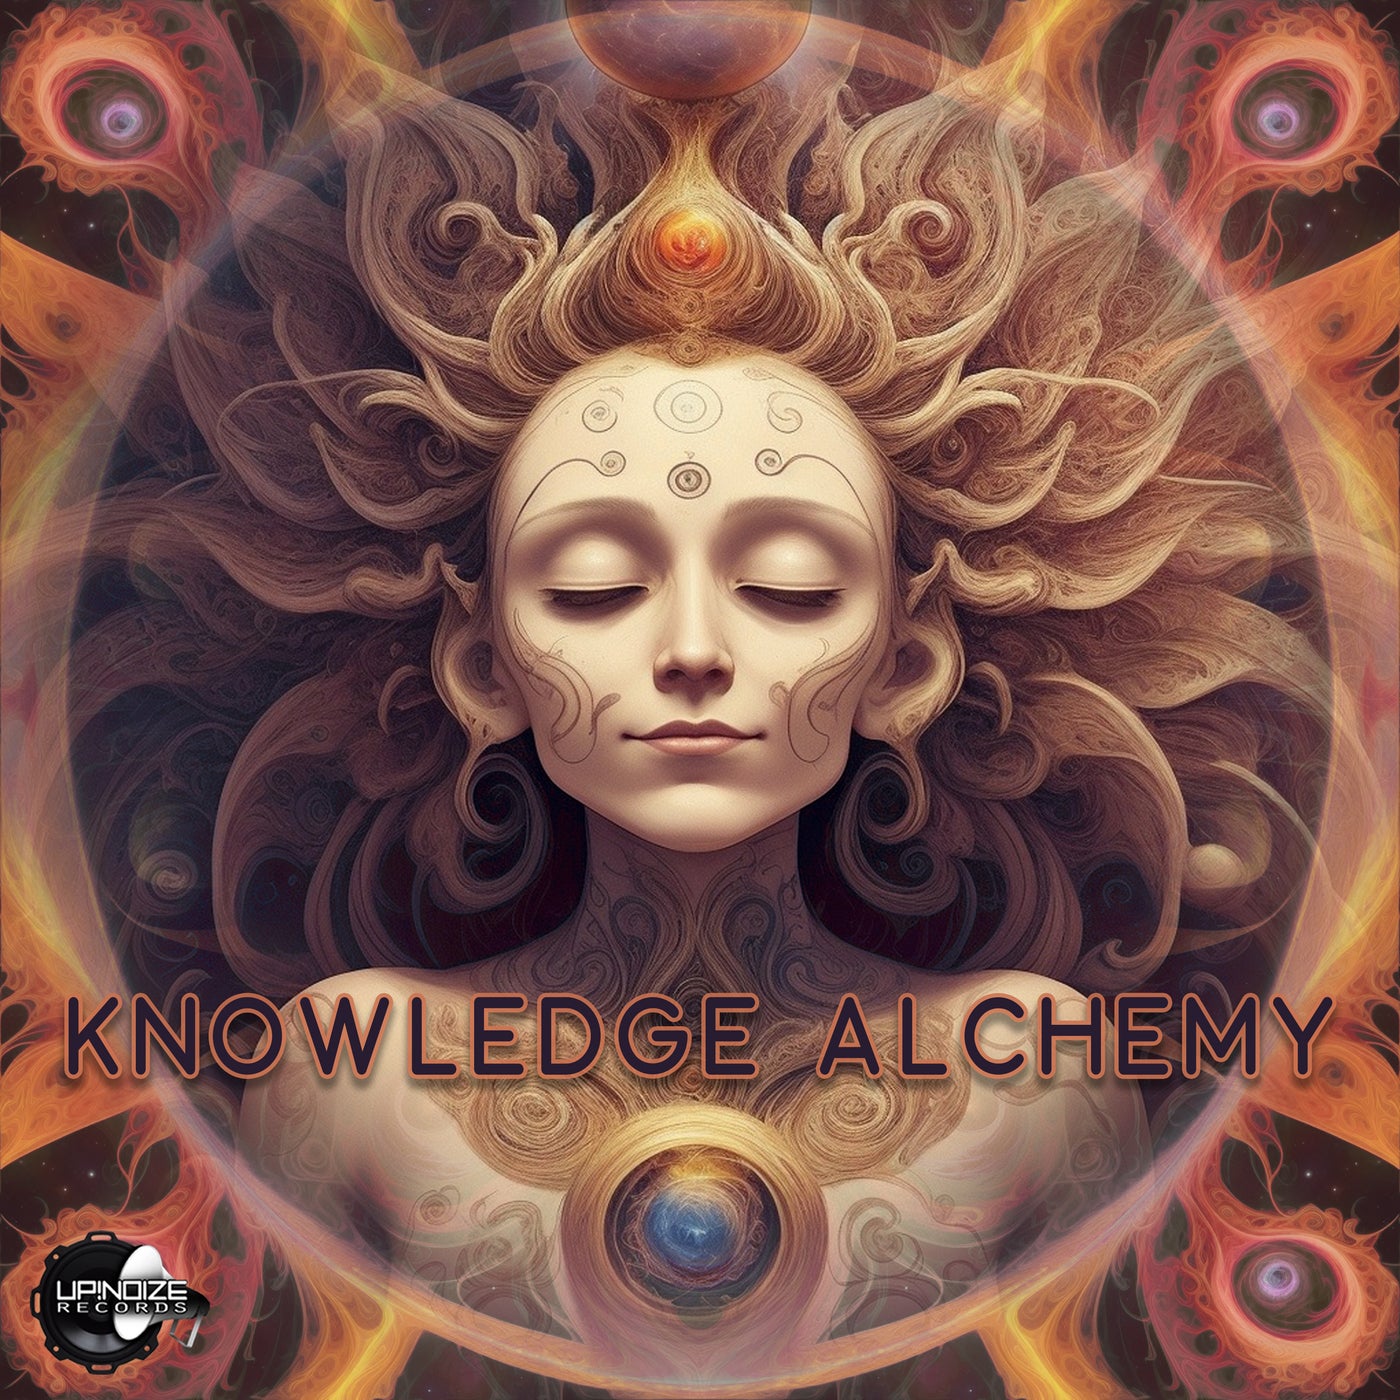 Knowledge Alchemy